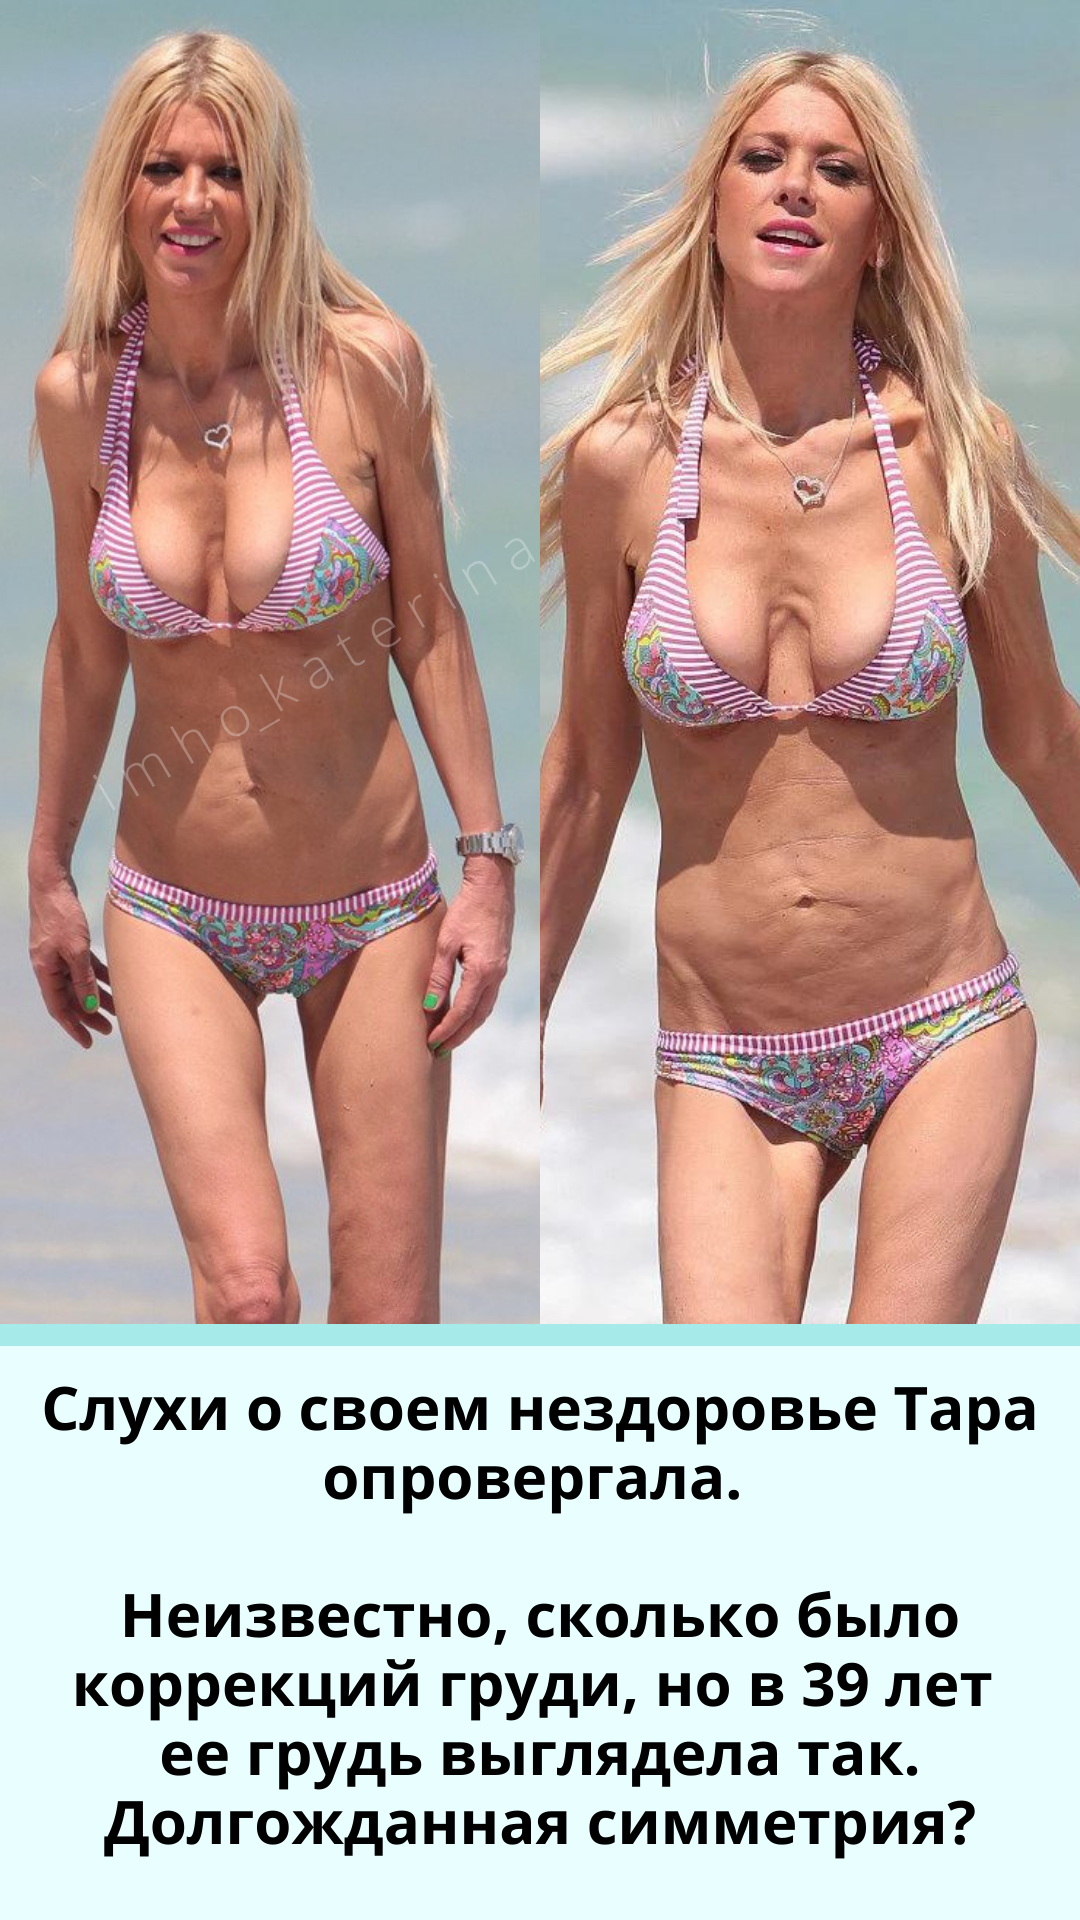 асимметрия груди у женщин форум фото 110